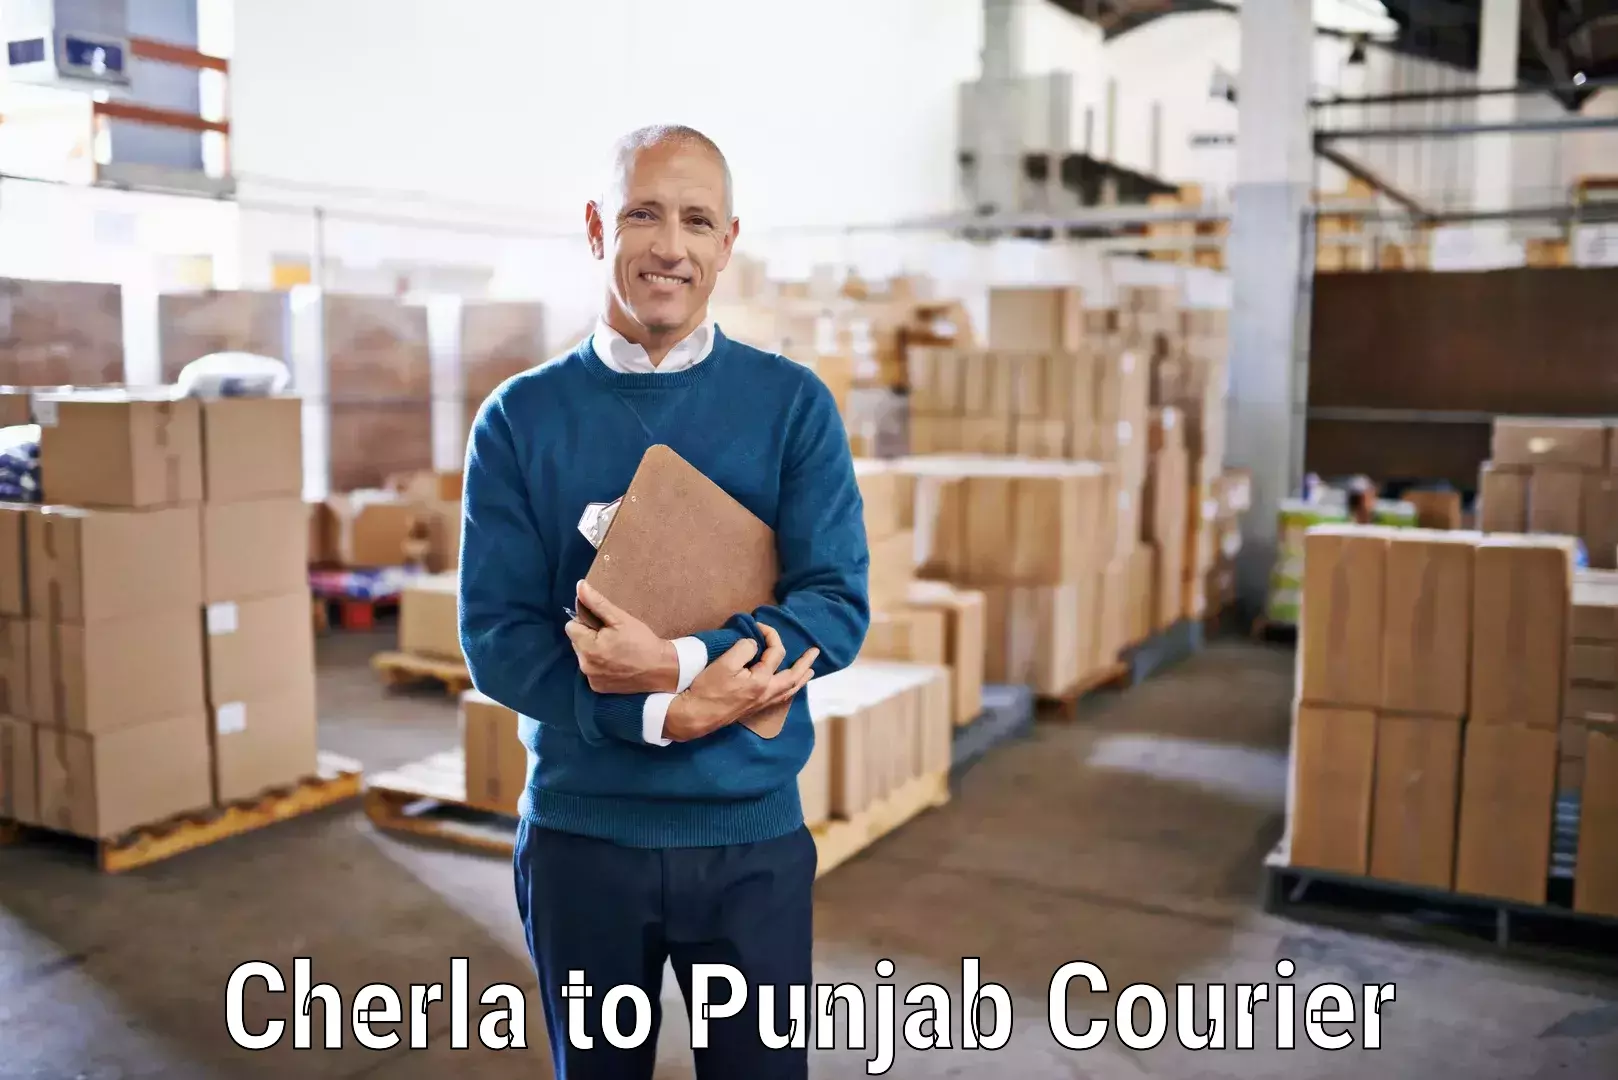 Flexible delivery schedules Cherla to Ludhiana